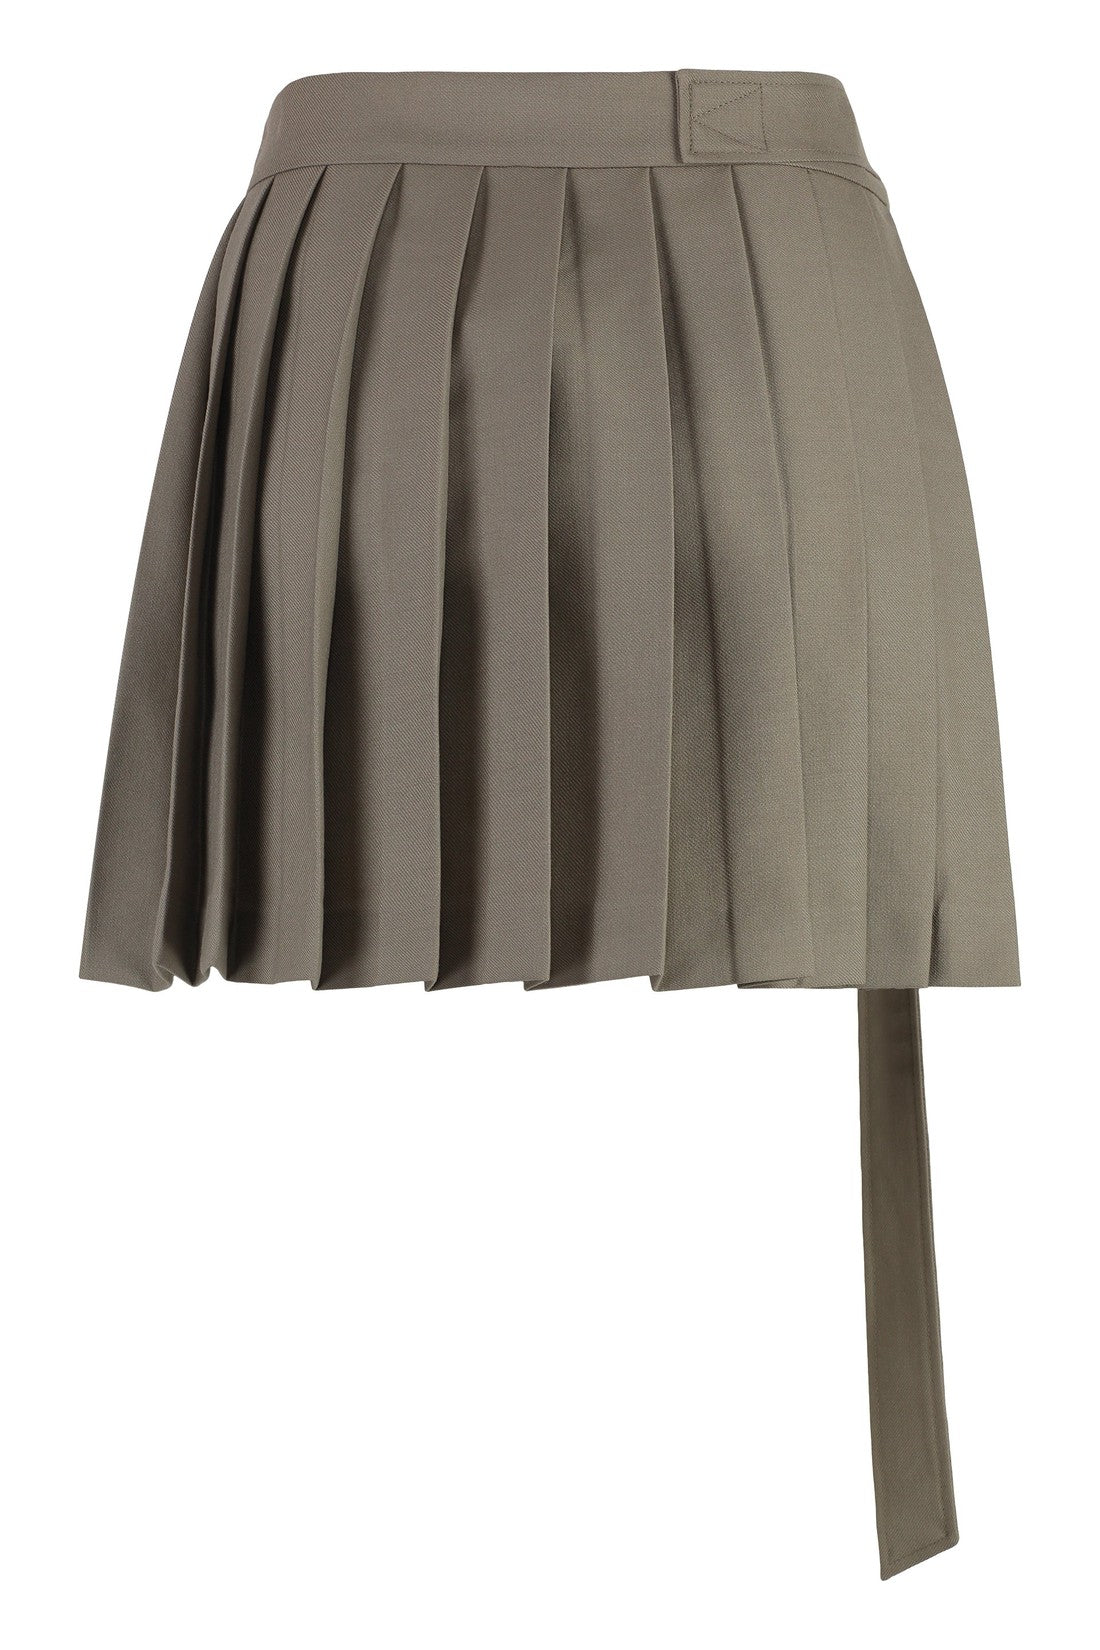 AMI PARIS-OUTLET-SALE-Pleated skirt-ARCHIVIST